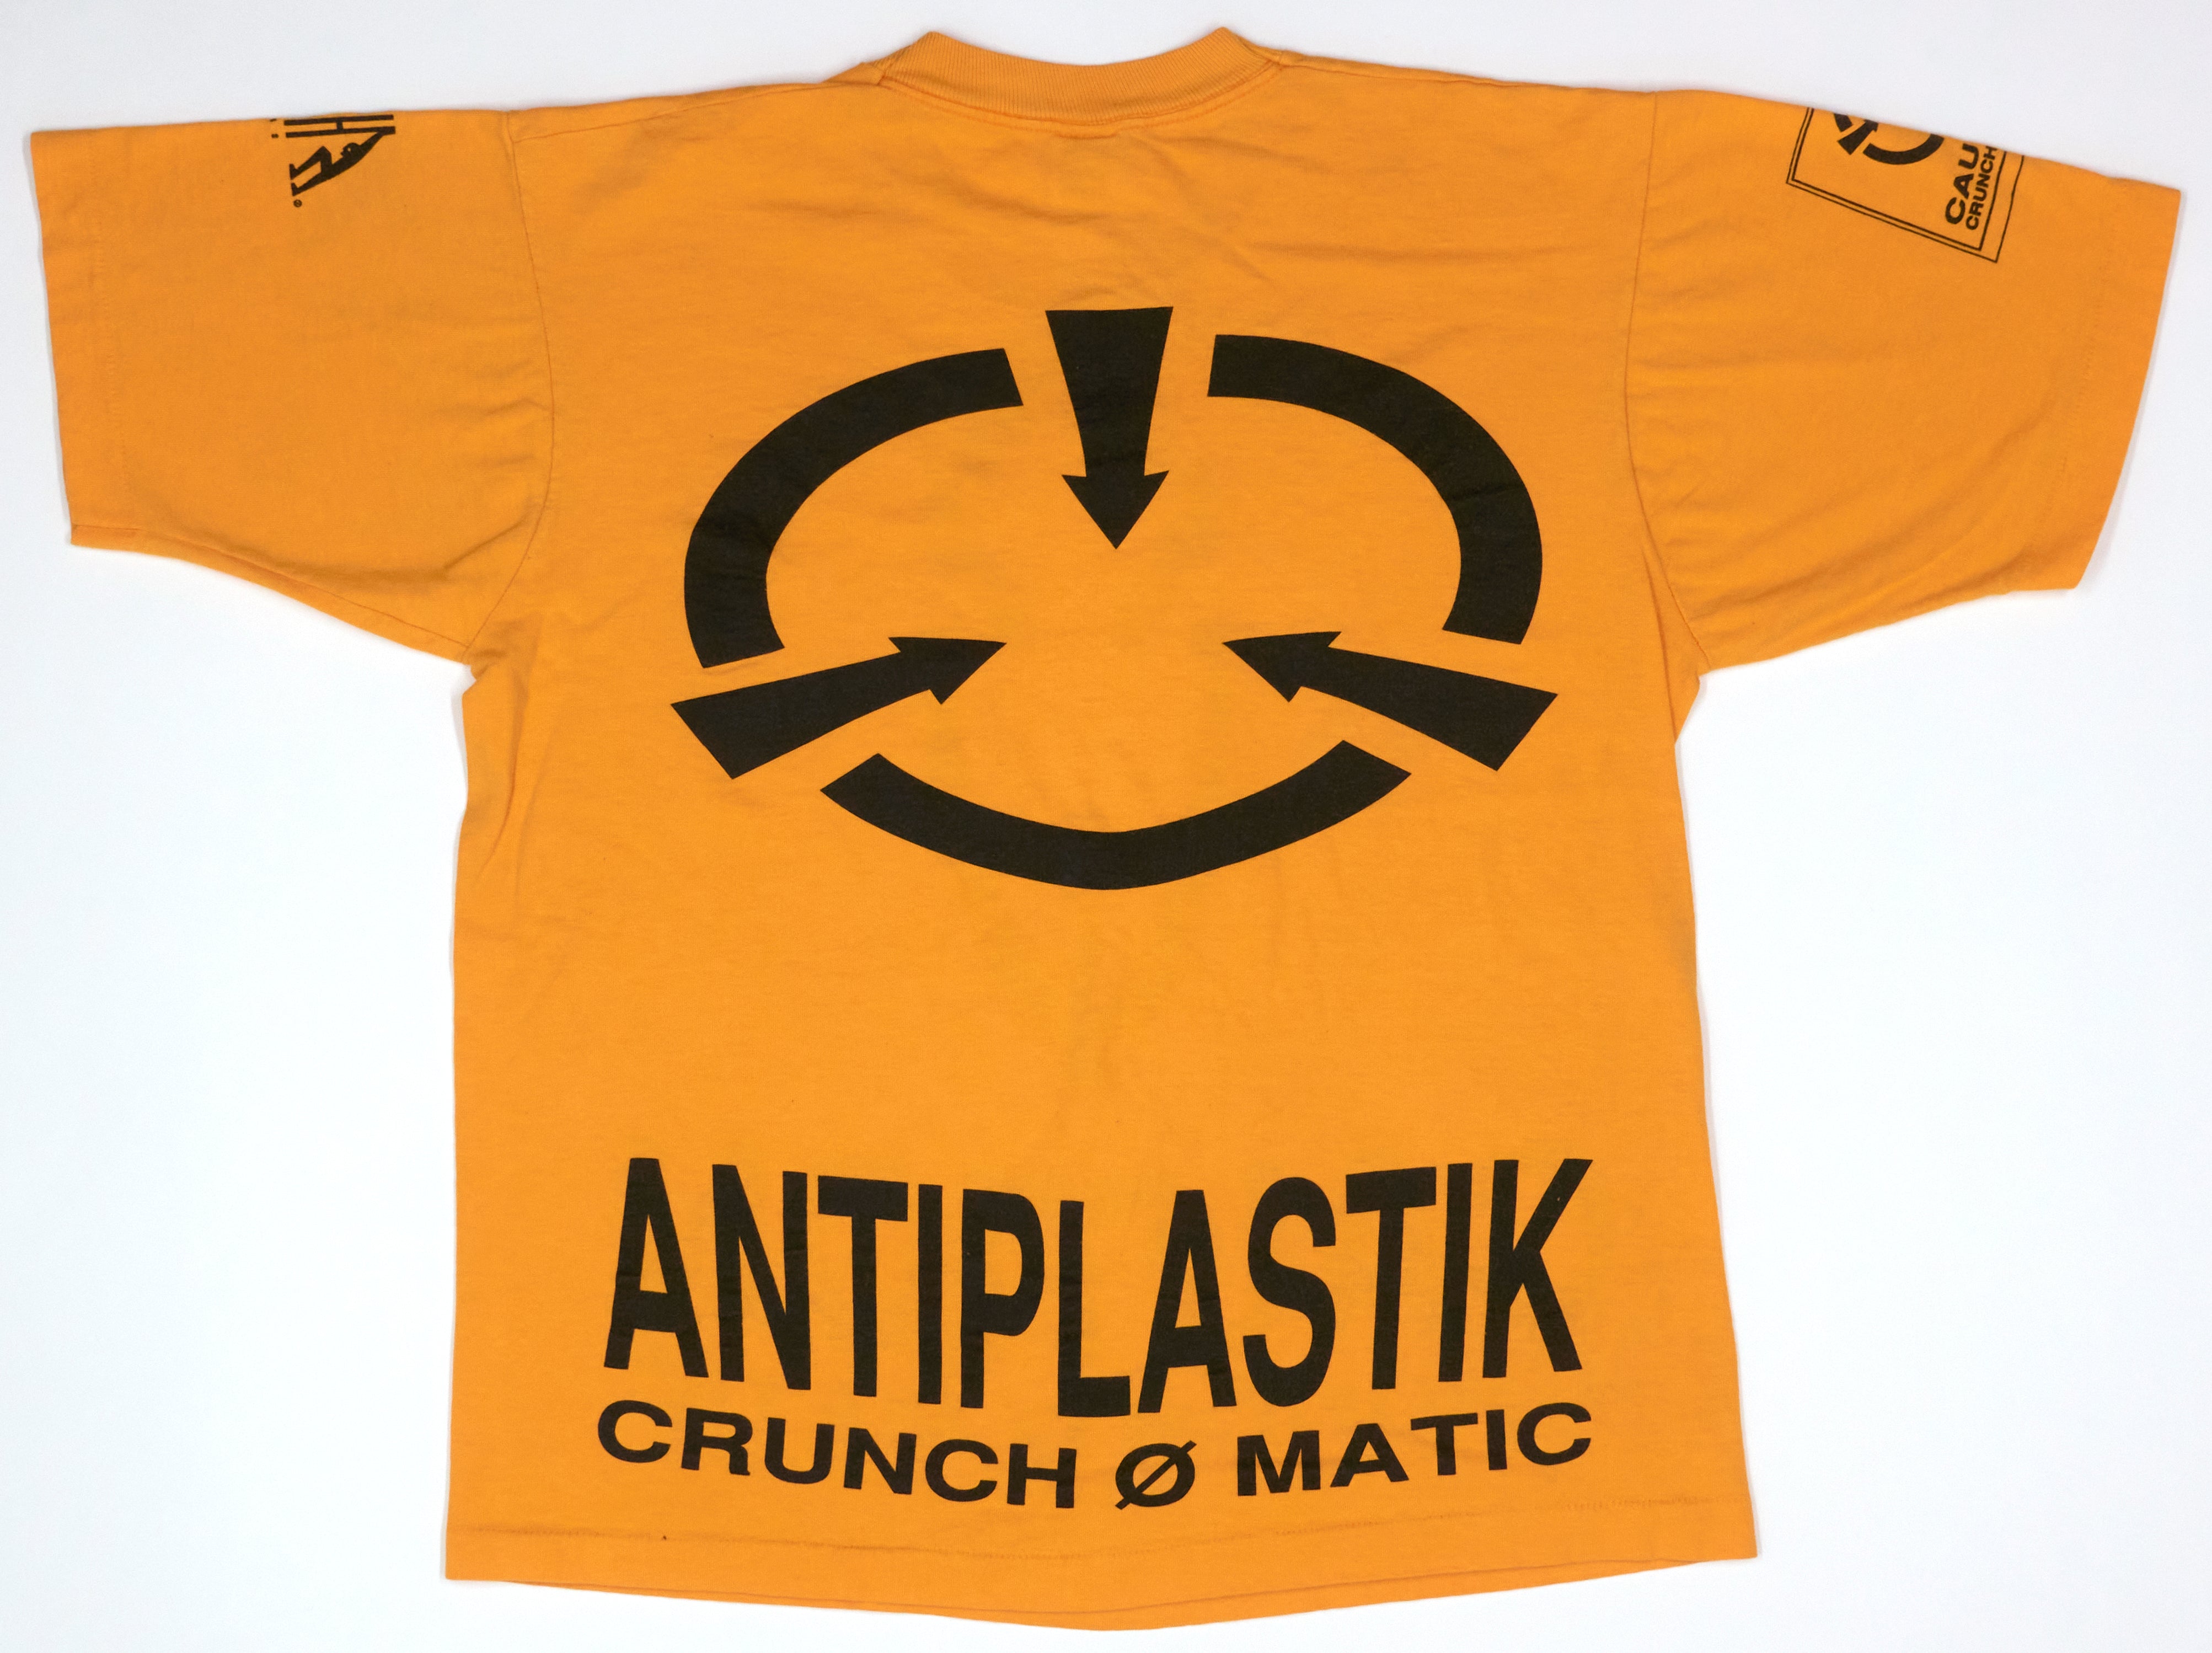 Crunch-Ø-Matic Caution Do Not Play 1991 Tour Shirt Size XL